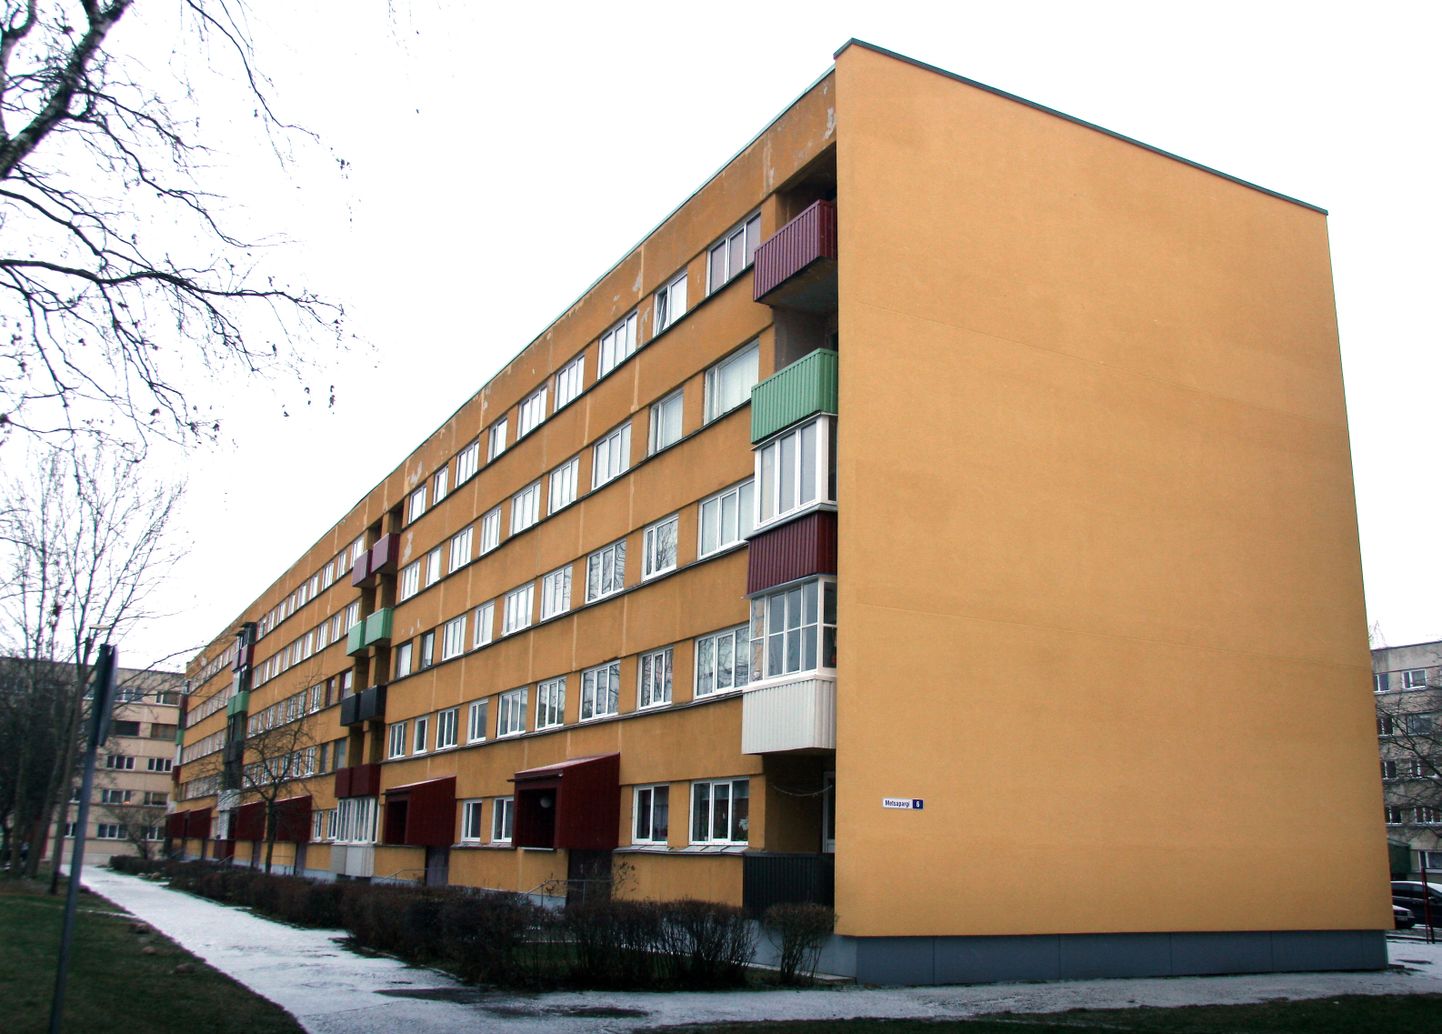 Квартирное товарищество "Метсапарги, 6" в текущем году затратило на ремонт фасада почти 30 тысяч евро и получило от города поддержку более 7 тысяч евро.